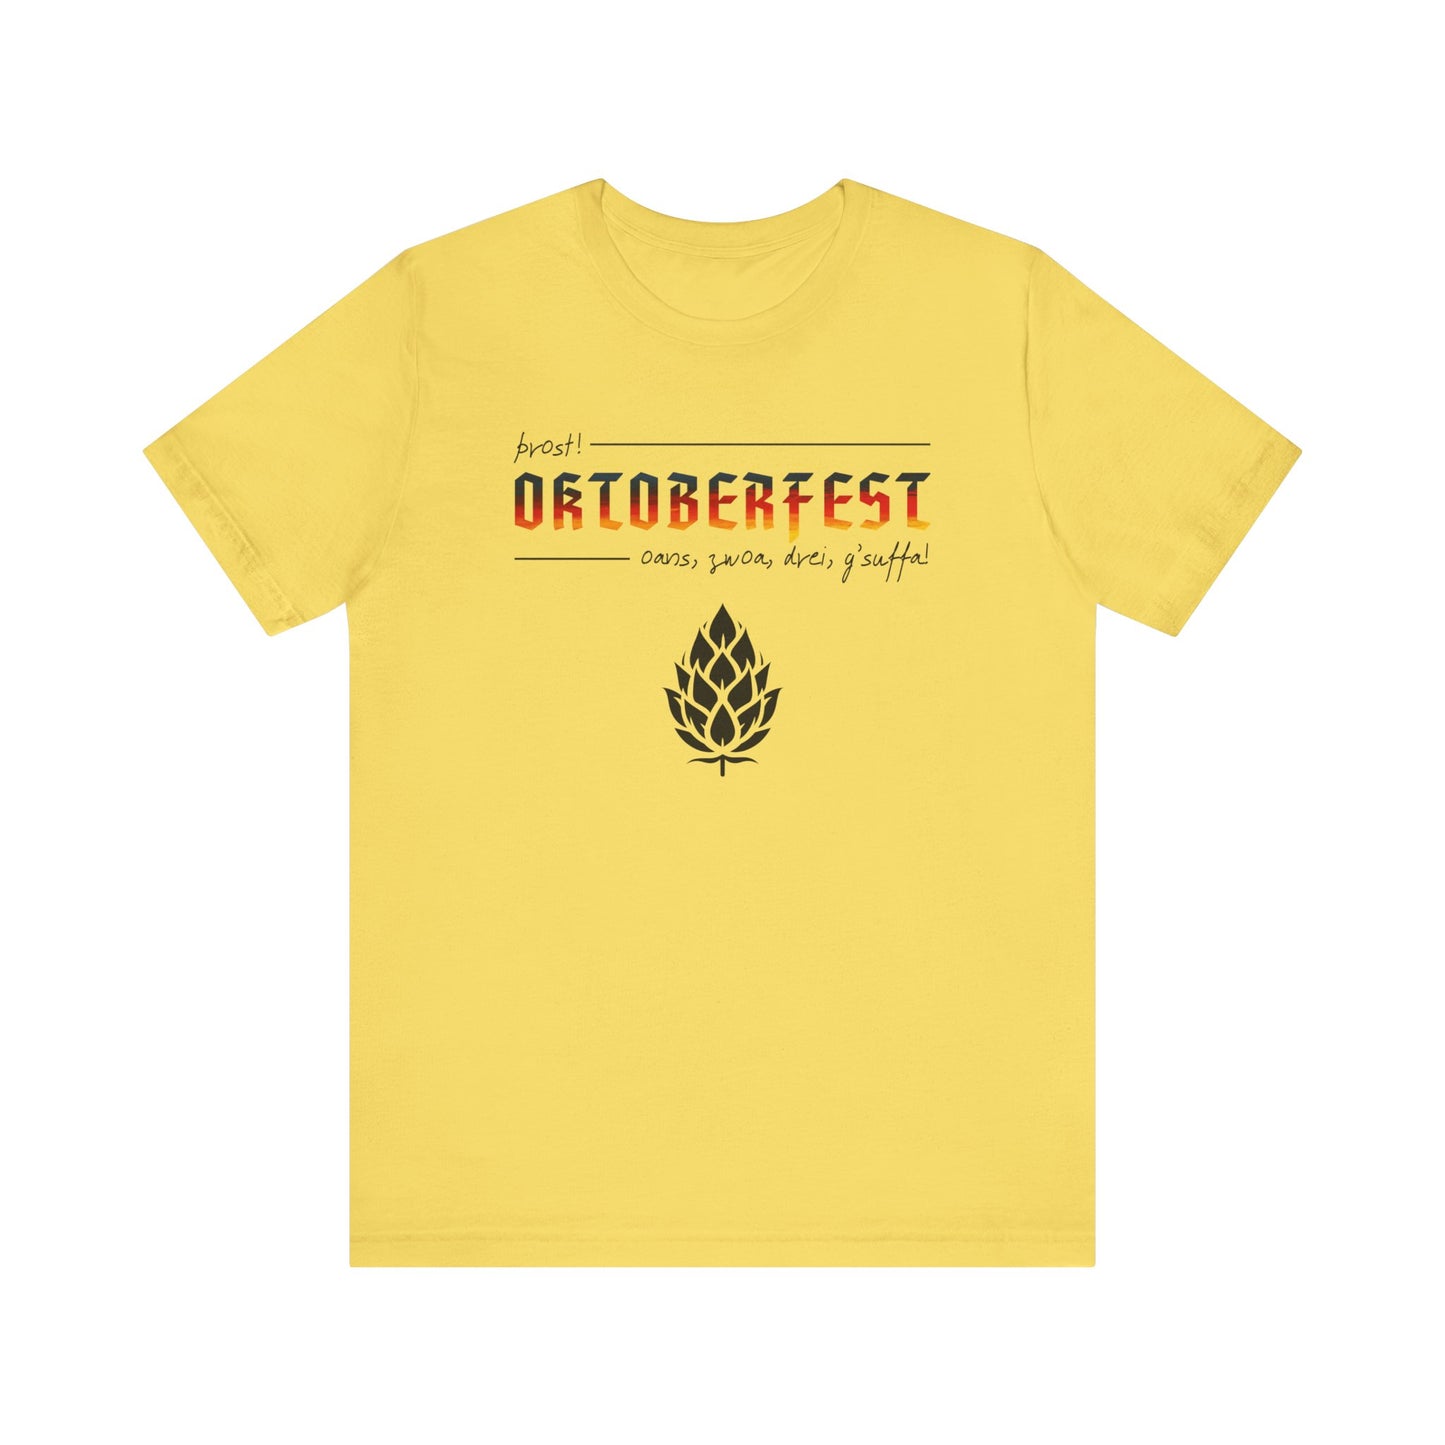 Oktoberfest Shirt, Beer Lover Shirt, September Shirt, October Shirt, October Fest Shirt, Craft Beer Shirt, German Shirt, Drinking Shirt